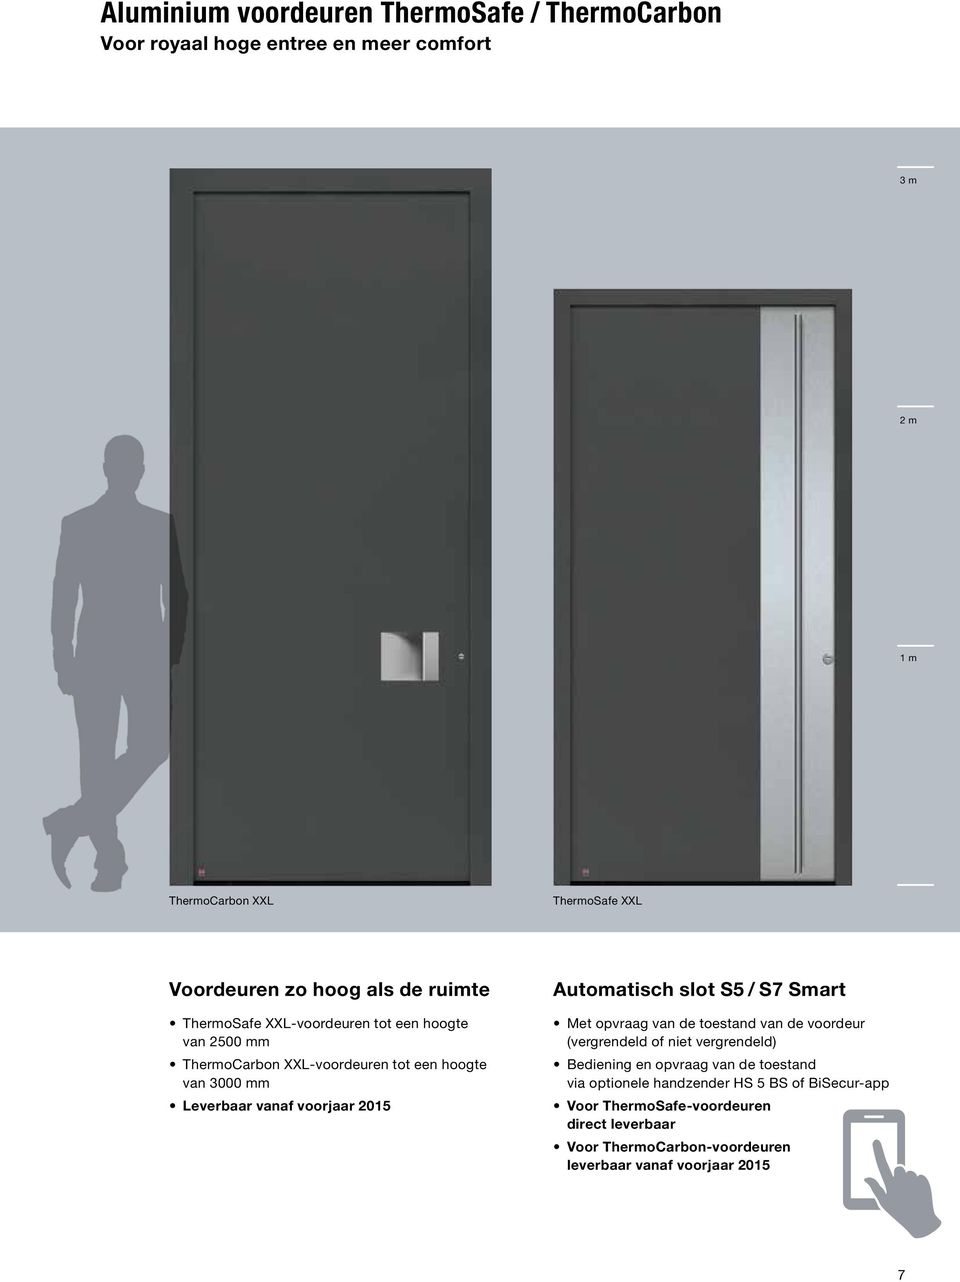 2015 Automatisch slot S5 / S7 Smart Met opvraag van de toestand van de voordeur (vergrendeld of niet vergrendeld) Bediening en opvraag van de